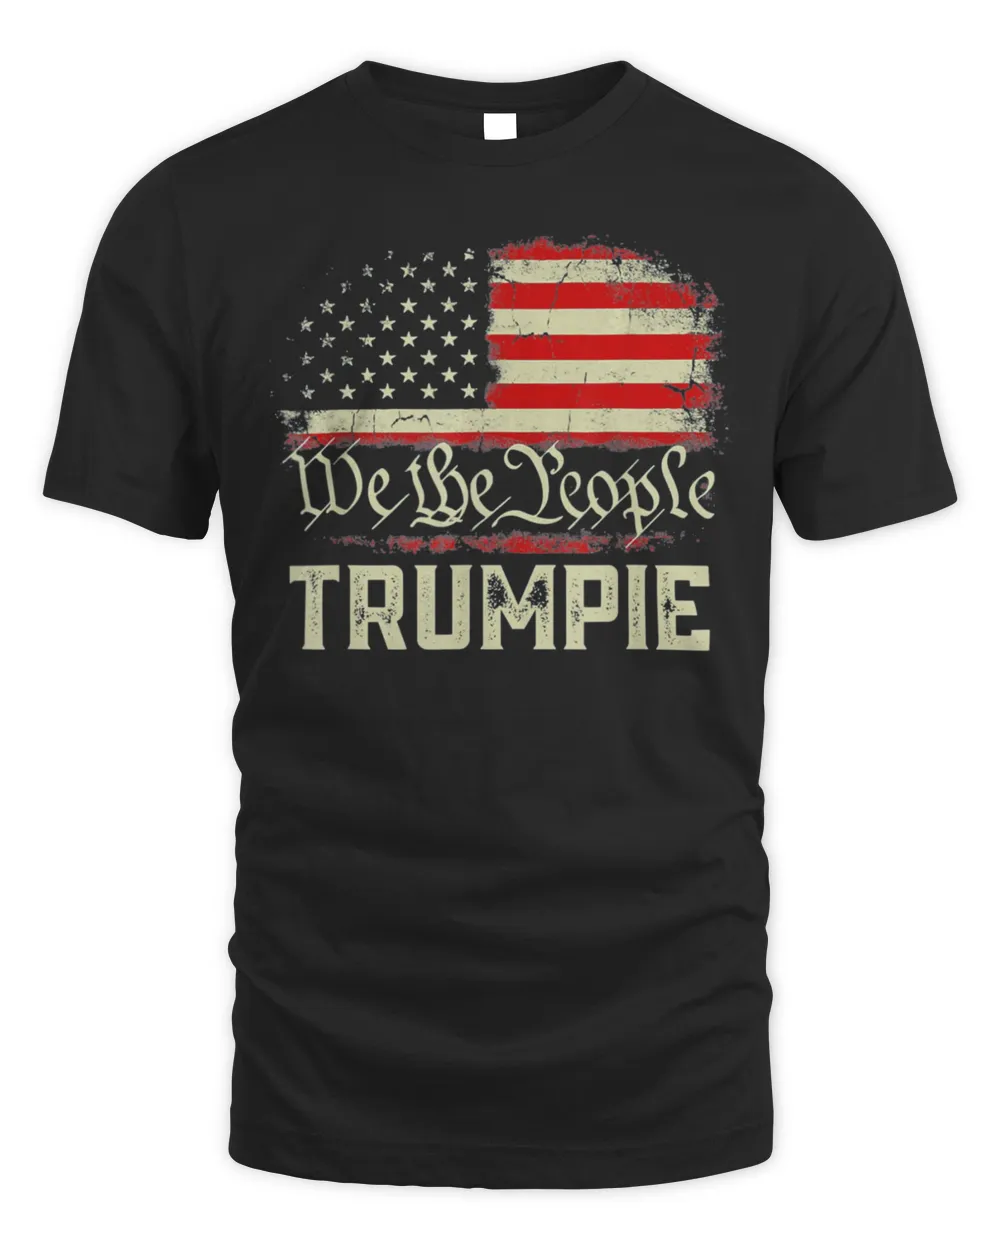 Trumpie Anti Biden Rally Wear Trumpie Trump 2024 Shirt